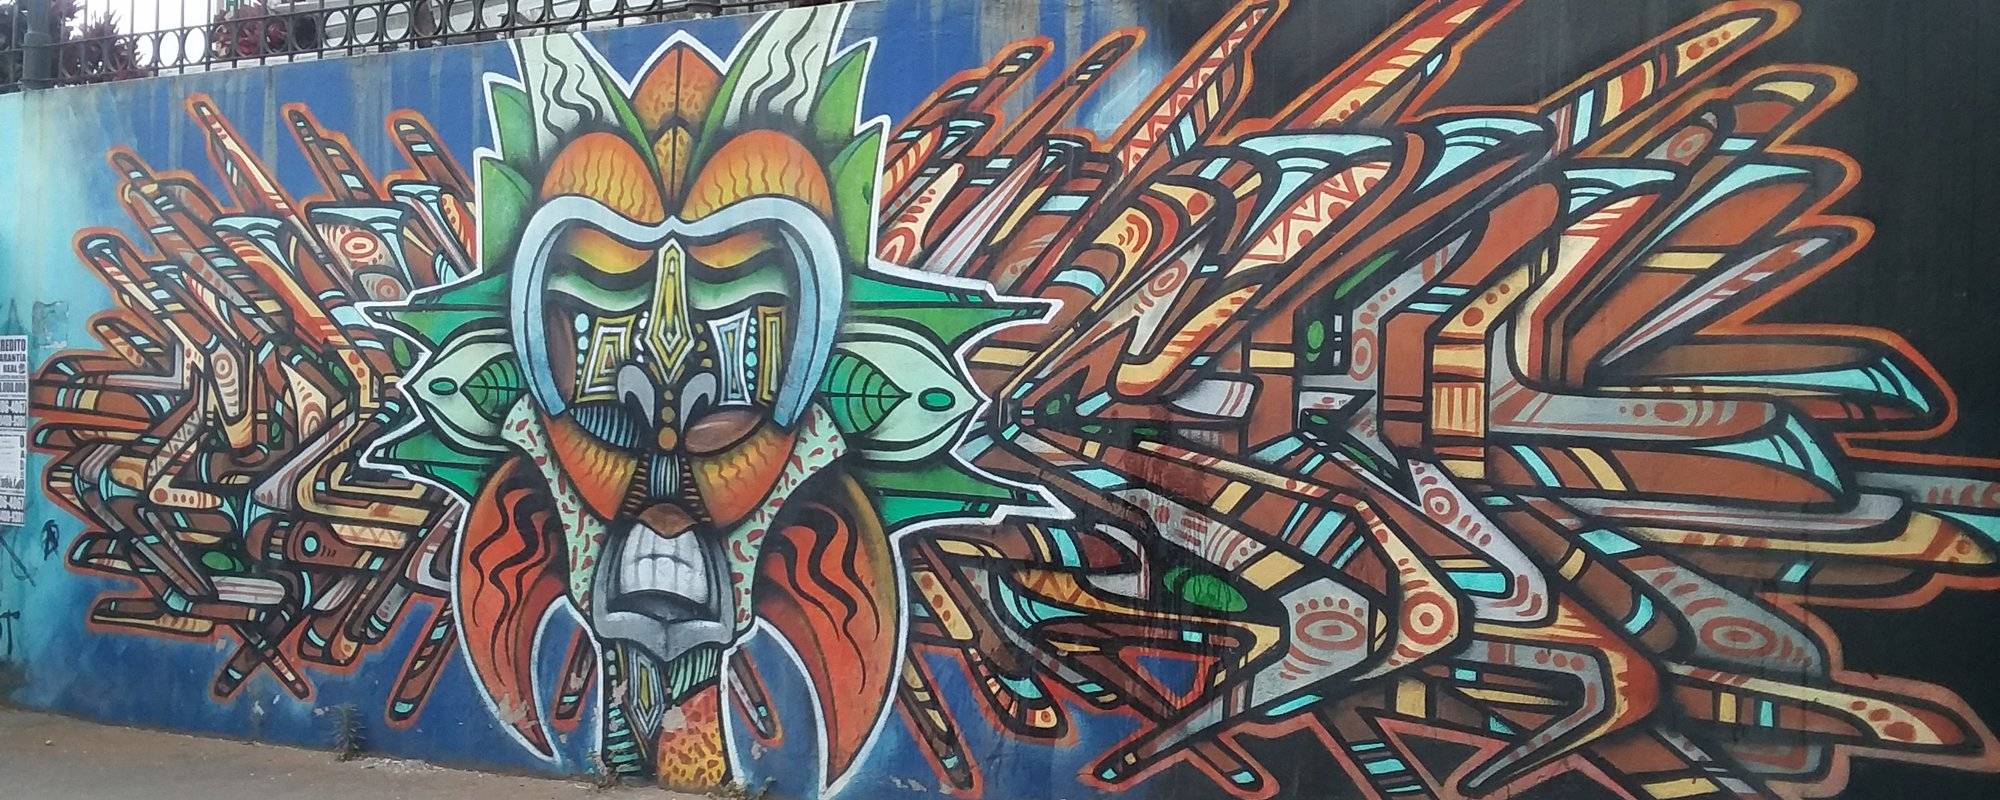 Street Art in San Jose, Costa Rica.